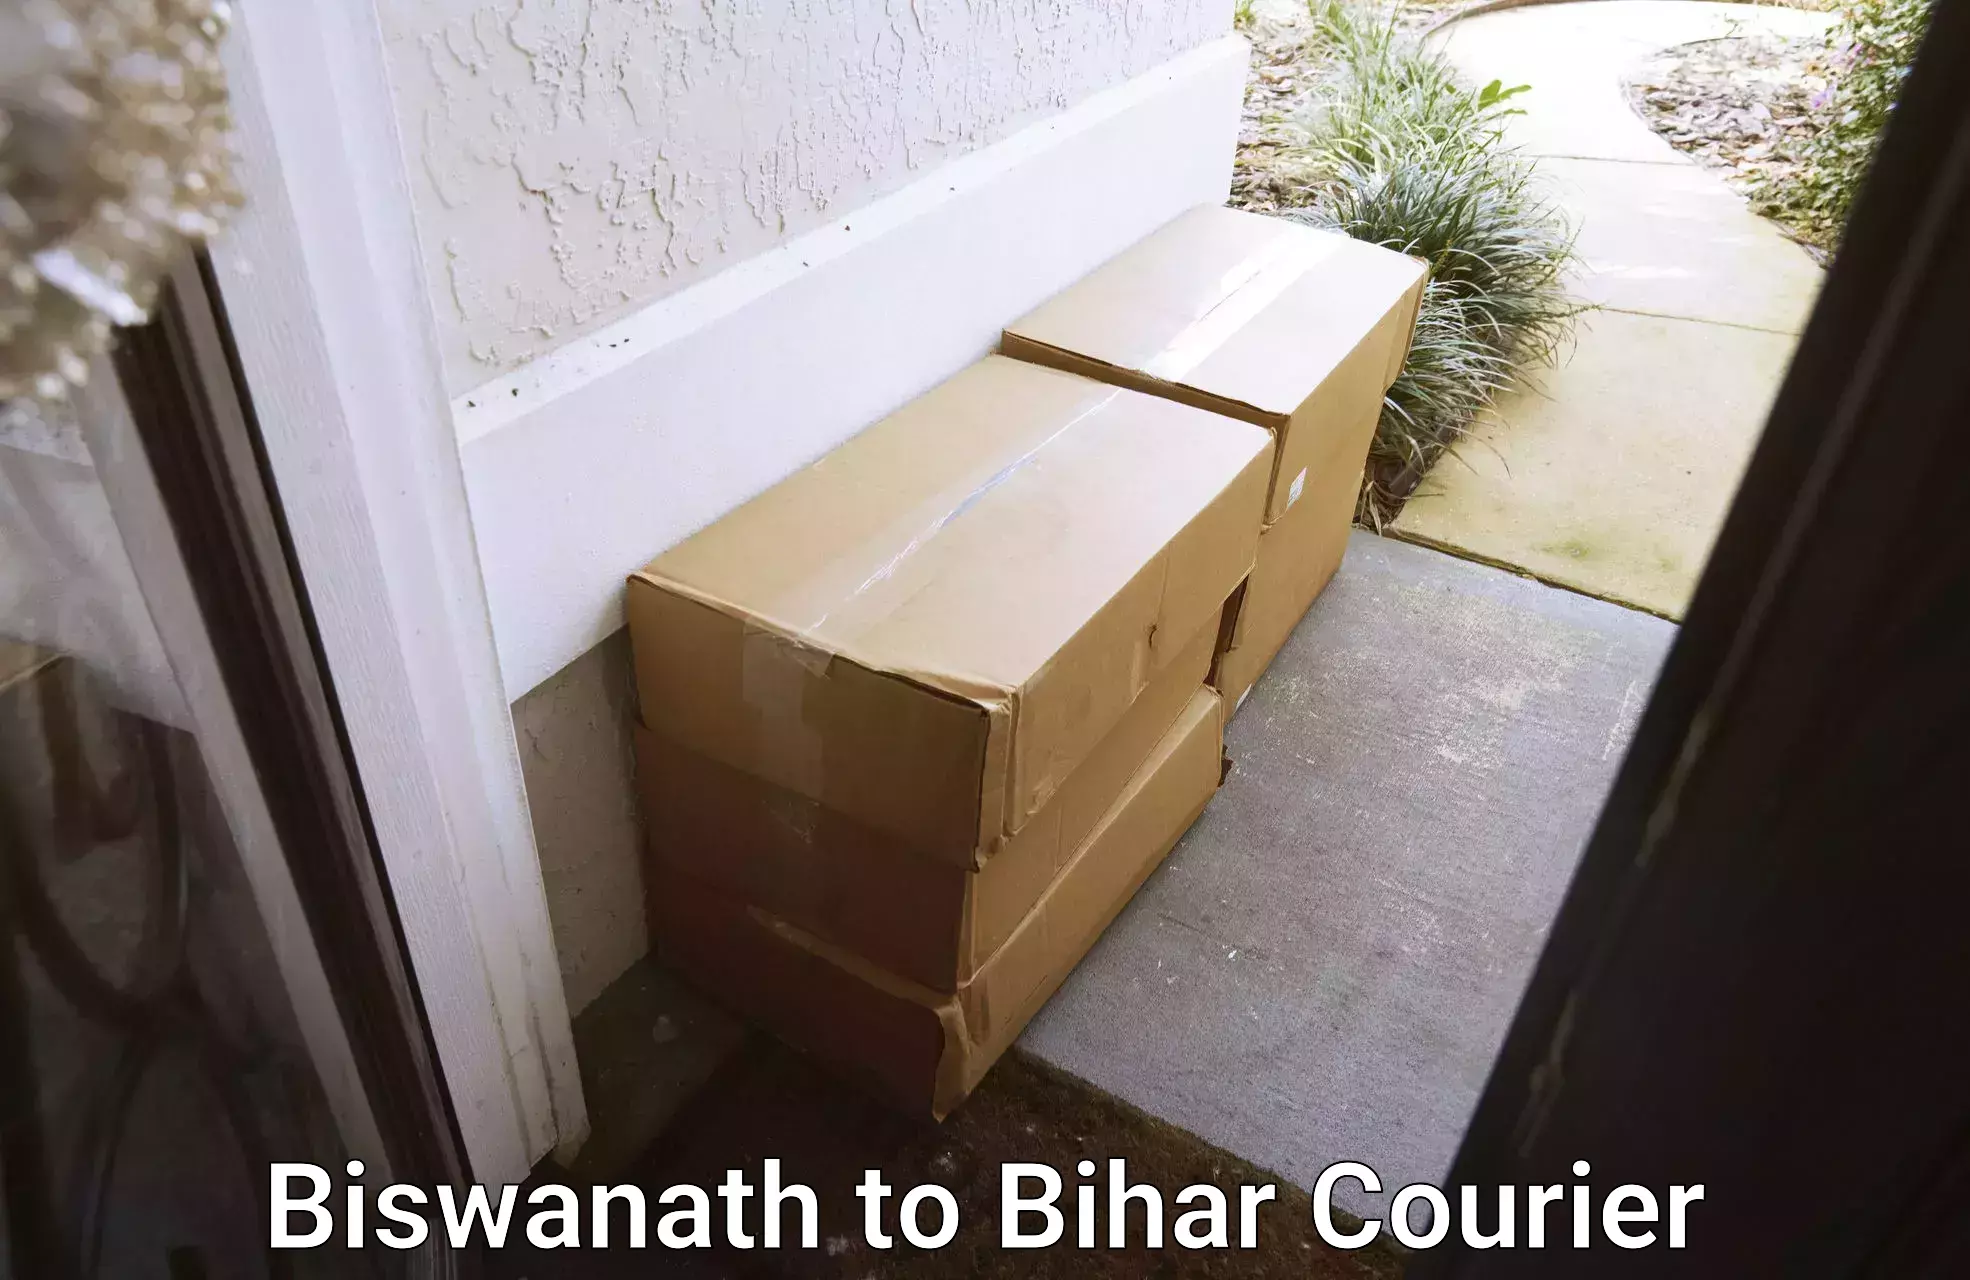 Special handling courier Biswanath to Aurangabad Bihar